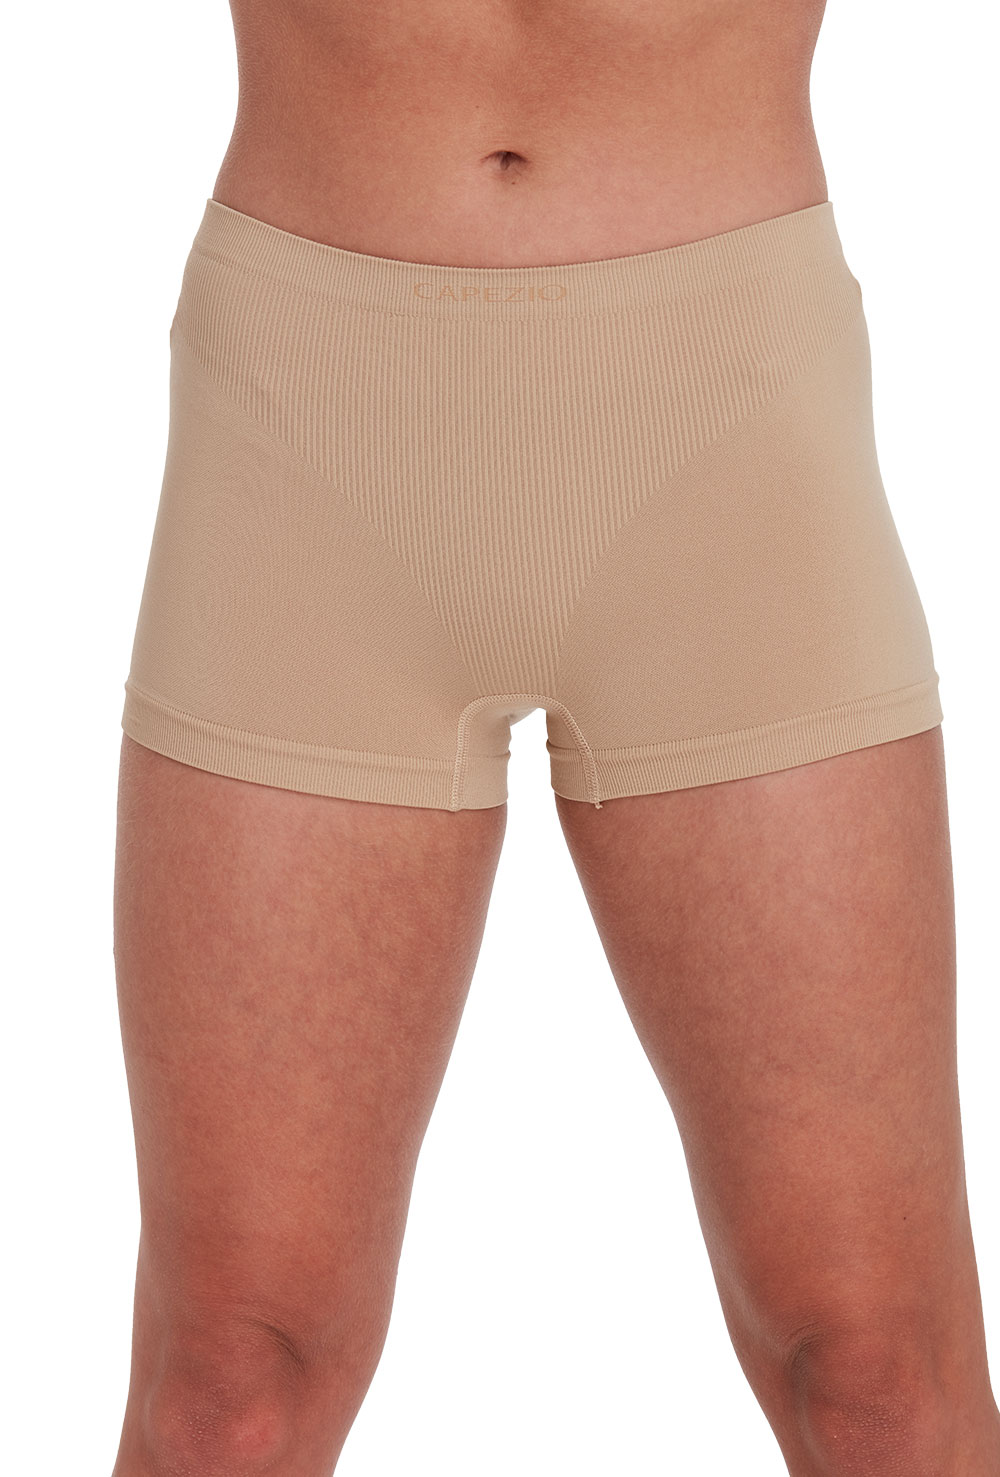 Seamless Boy Cut Layering Shorts - Porselli Dancewear